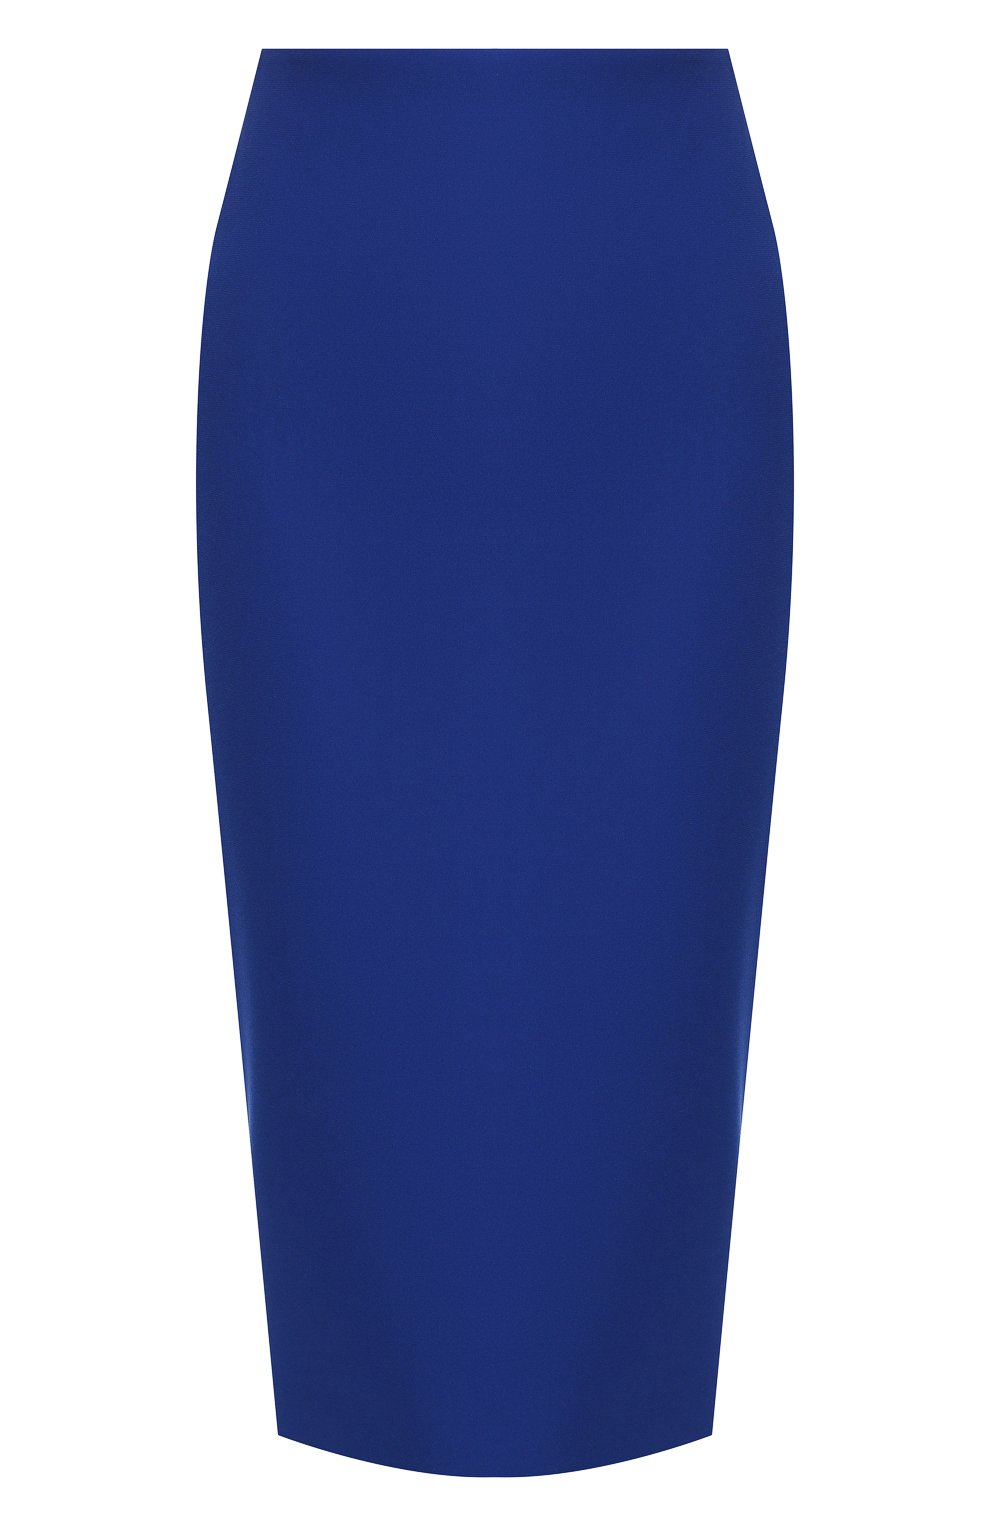 Женская юбка VICTORIA BECKHAM синего цвета, арт. SK PEN 31118 | Фото 1 (Материал внешний: Синтетический материал; Женское Кросс-КТ: Юбка-одежда; Длина Ж (юбки, платья, шорты): Миди)